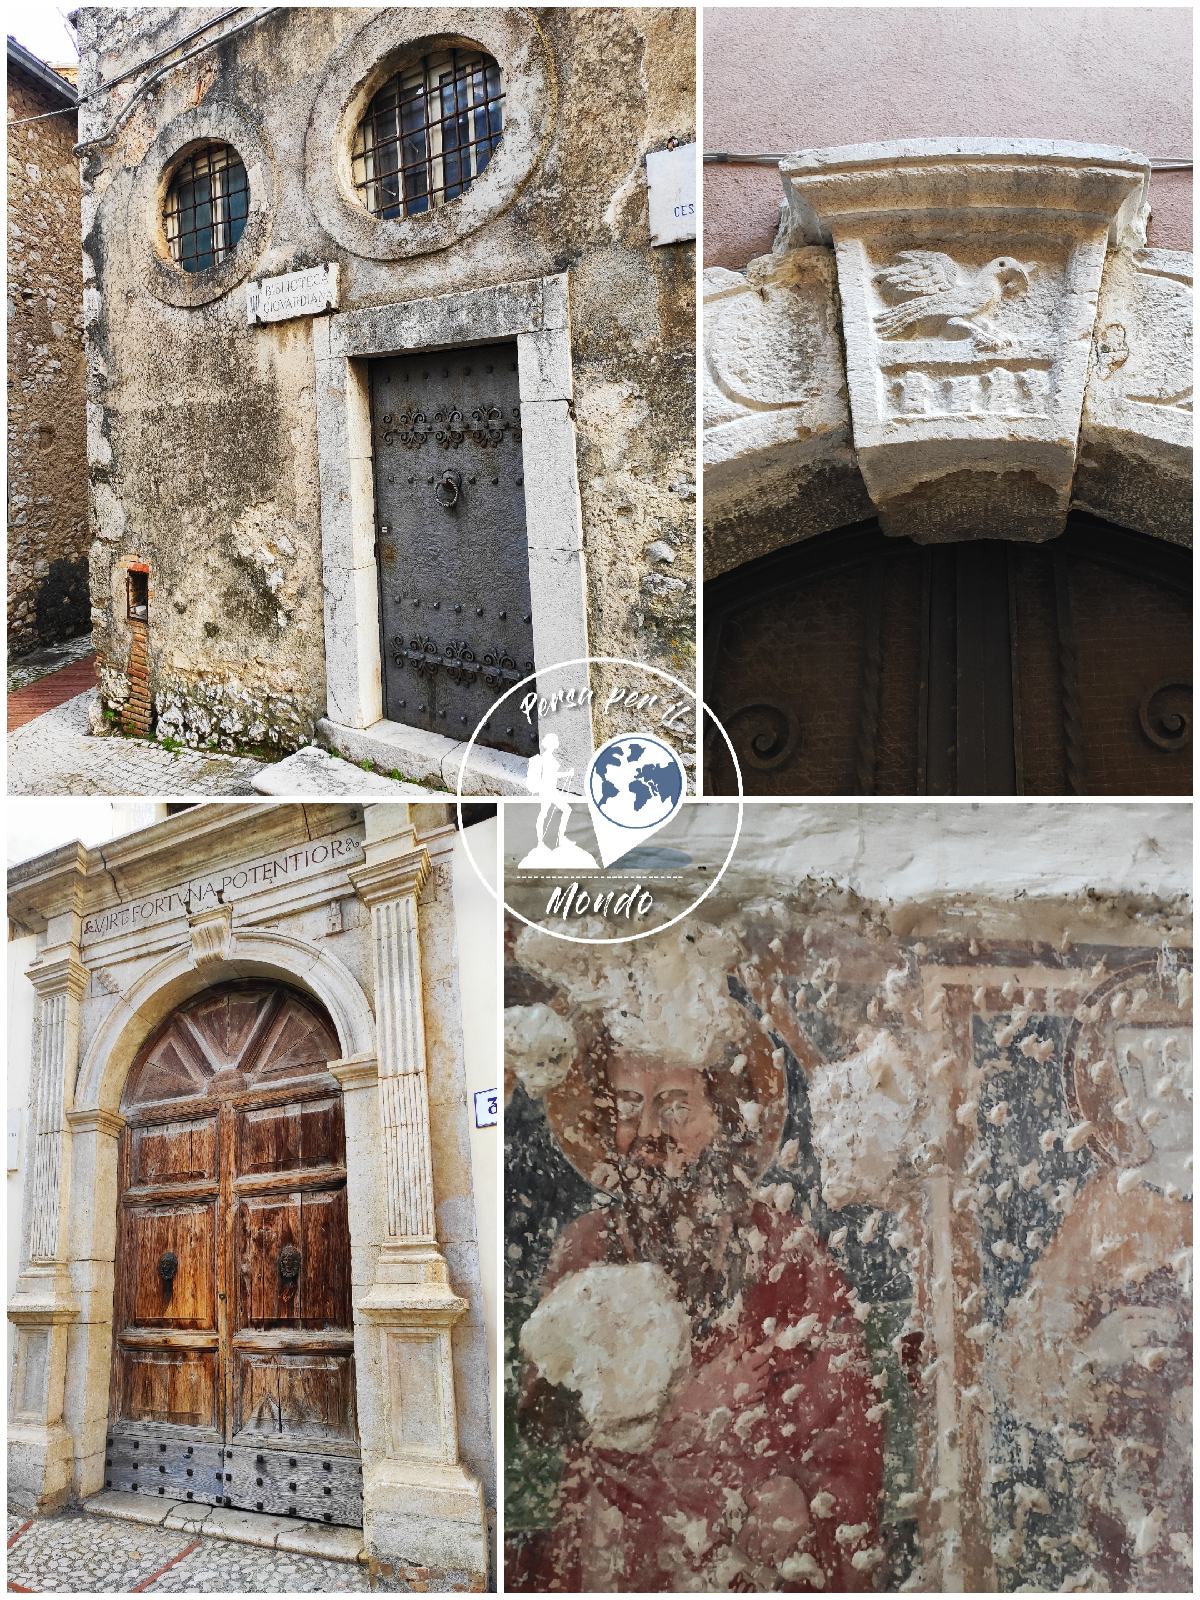 Veroli: a. Ingresso biblioteca Giovardiana b. Intarsio di colomba su chiave di volta c. Dettaglio portale, d. dettaglio affresco chiesa di San Leucio